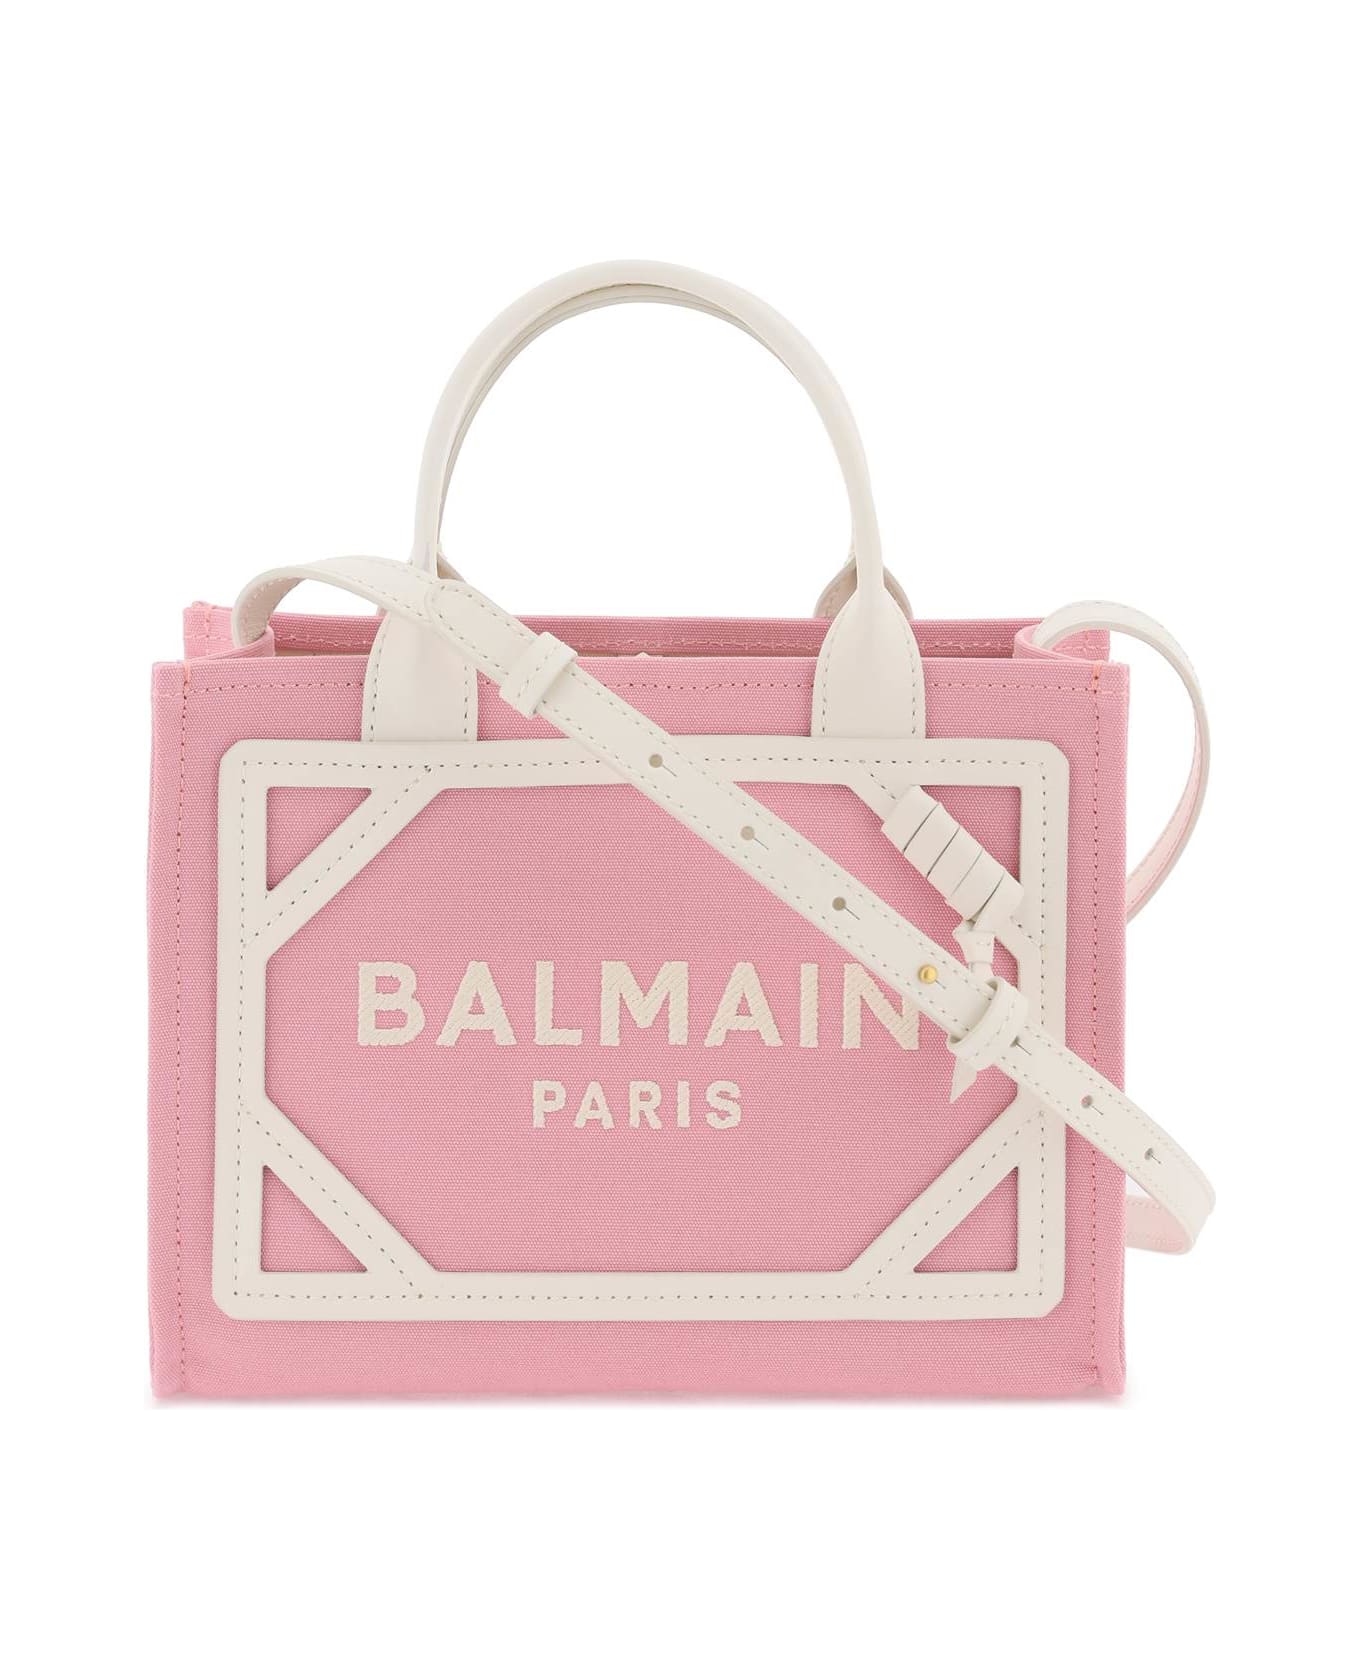 Balmain B-army Tote Bag - Pink トートバッグ